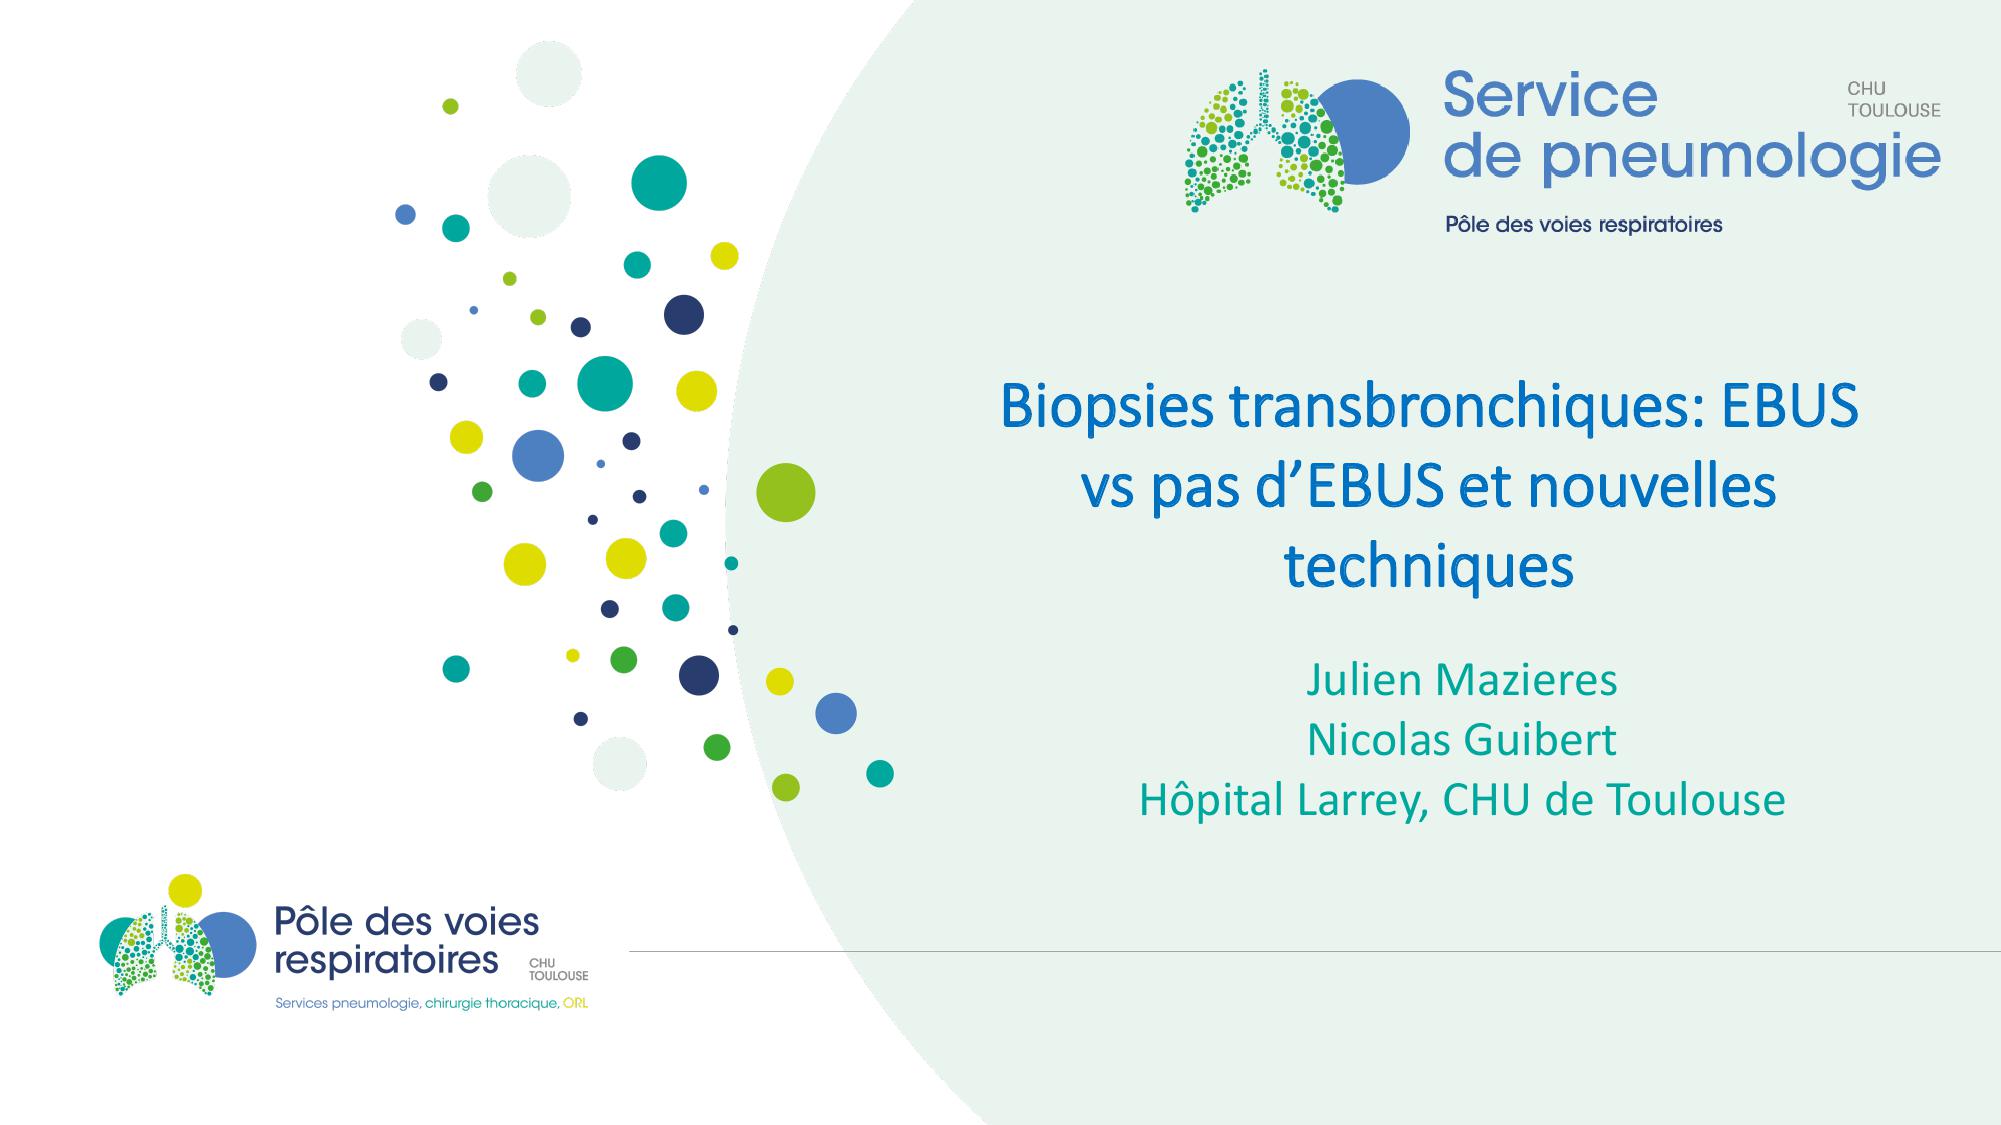 Biopsies transbronchiques EBUS vs pas d'EBUS et nouvelles techniques. Julien Mazieres